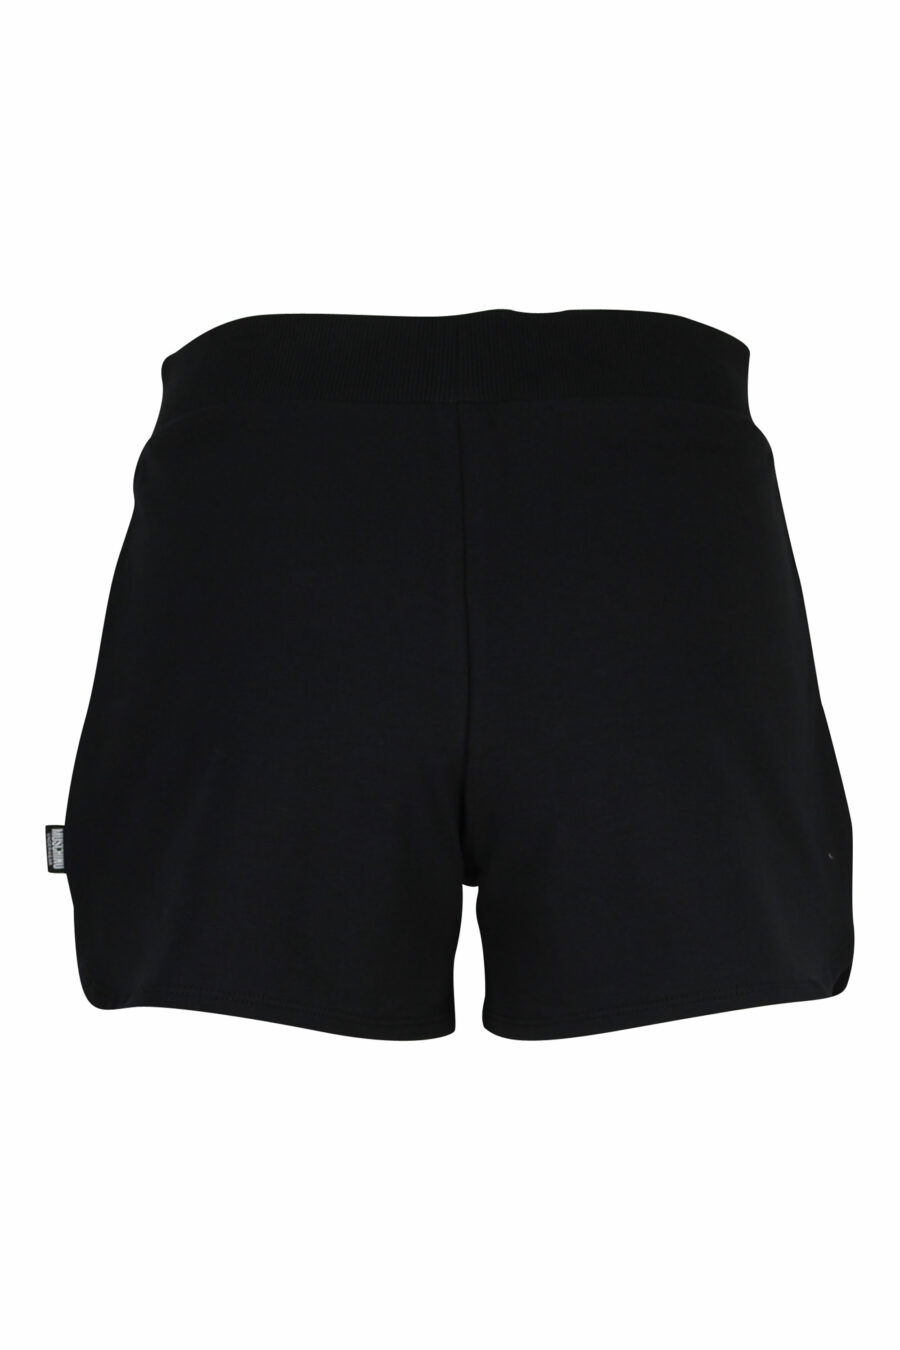 Moschino - Shorts negros con minilogo oso de goma en blanco - BLS Fashion